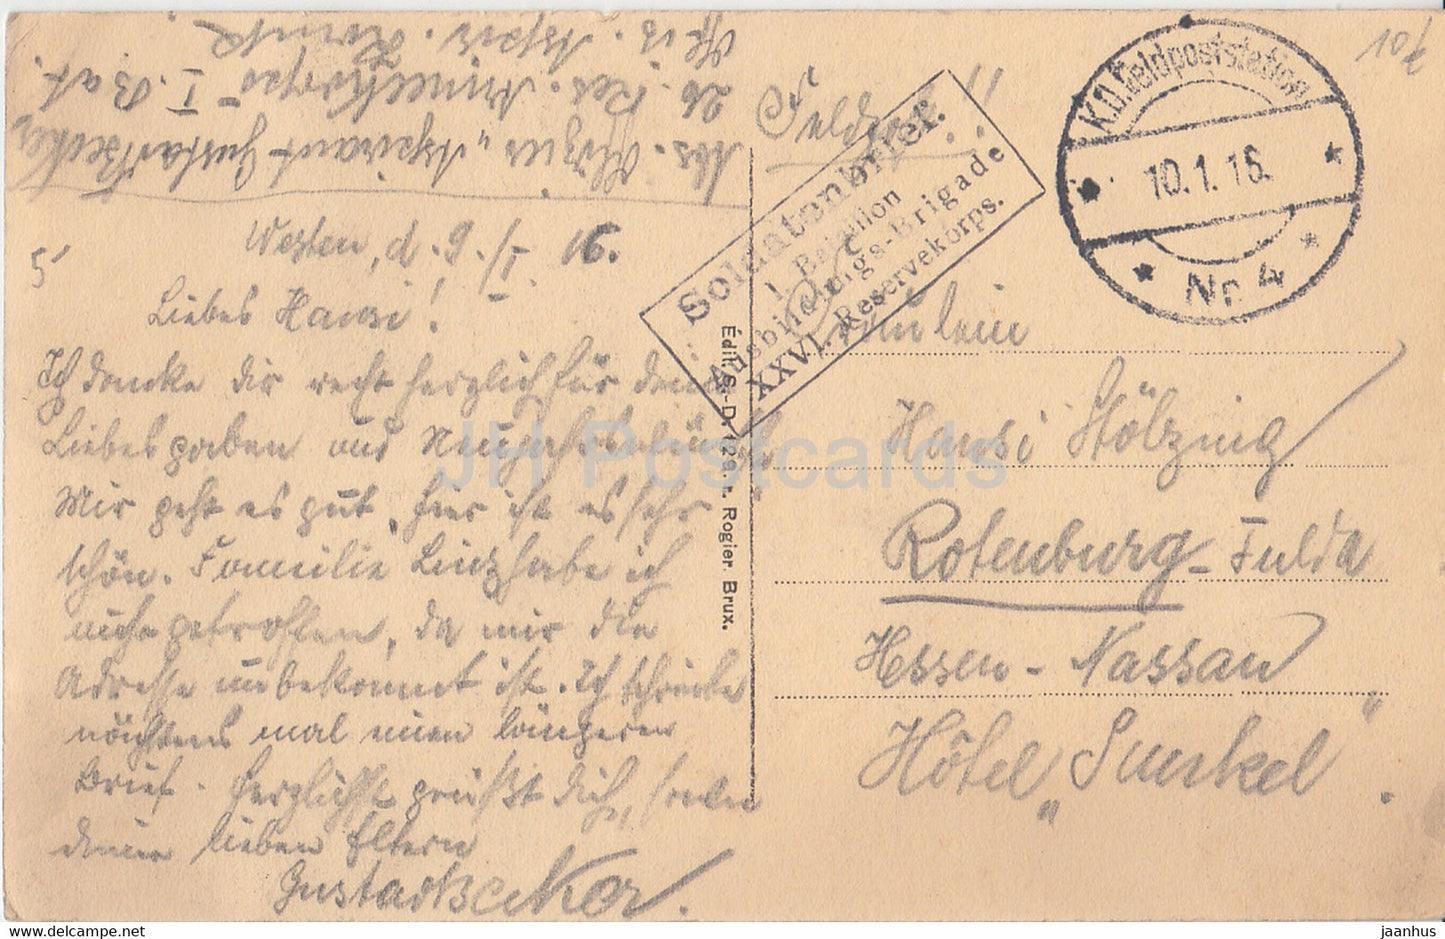 Bruxelles - Brussel - Entree du Bois de la Cambre - 1 Bataillon - Feldpost - alte Postkarte - 1916 - Belgien - gebraucht